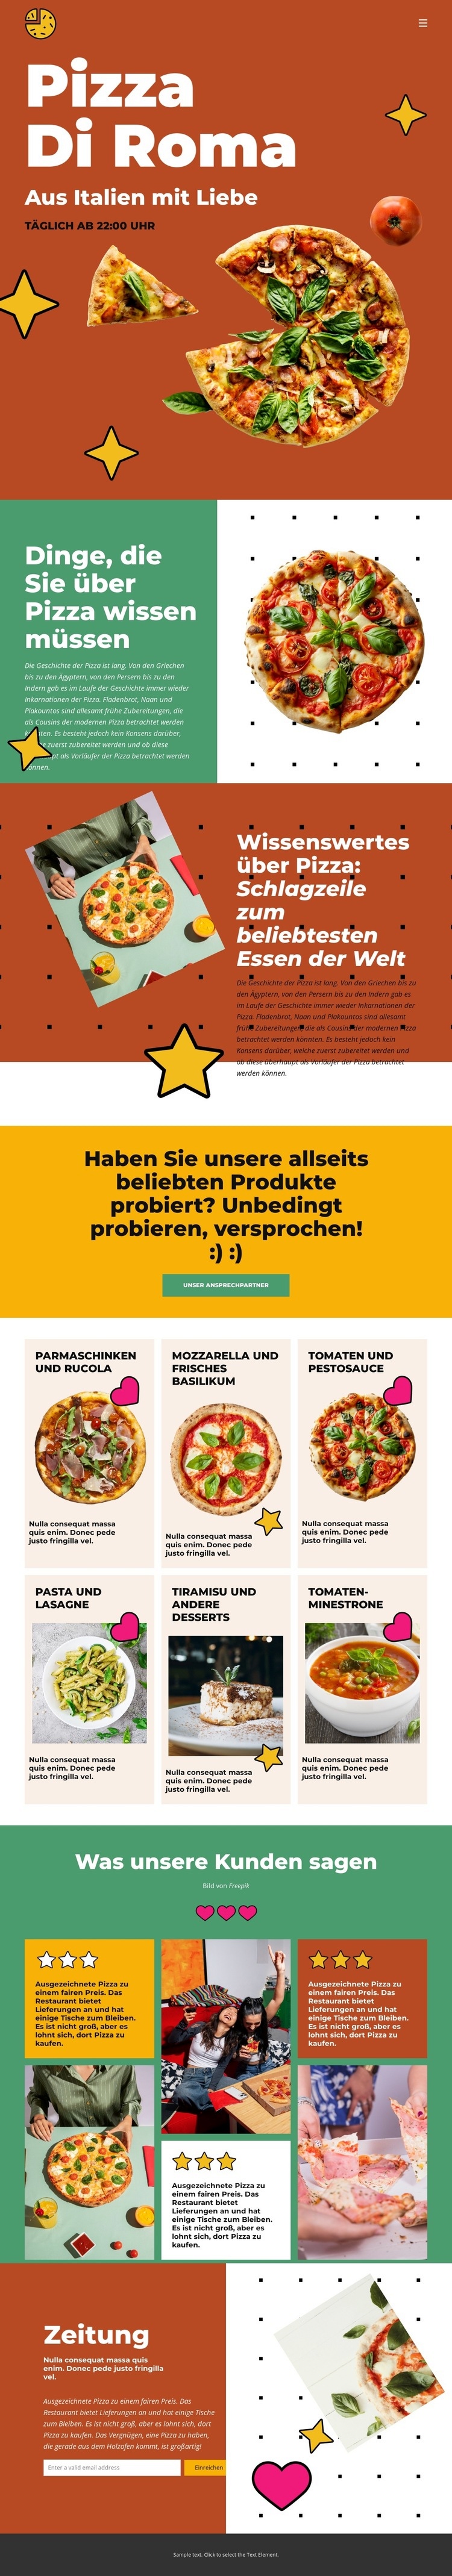 Dinge, die Sie über Pizza wissen müssen Landing Page